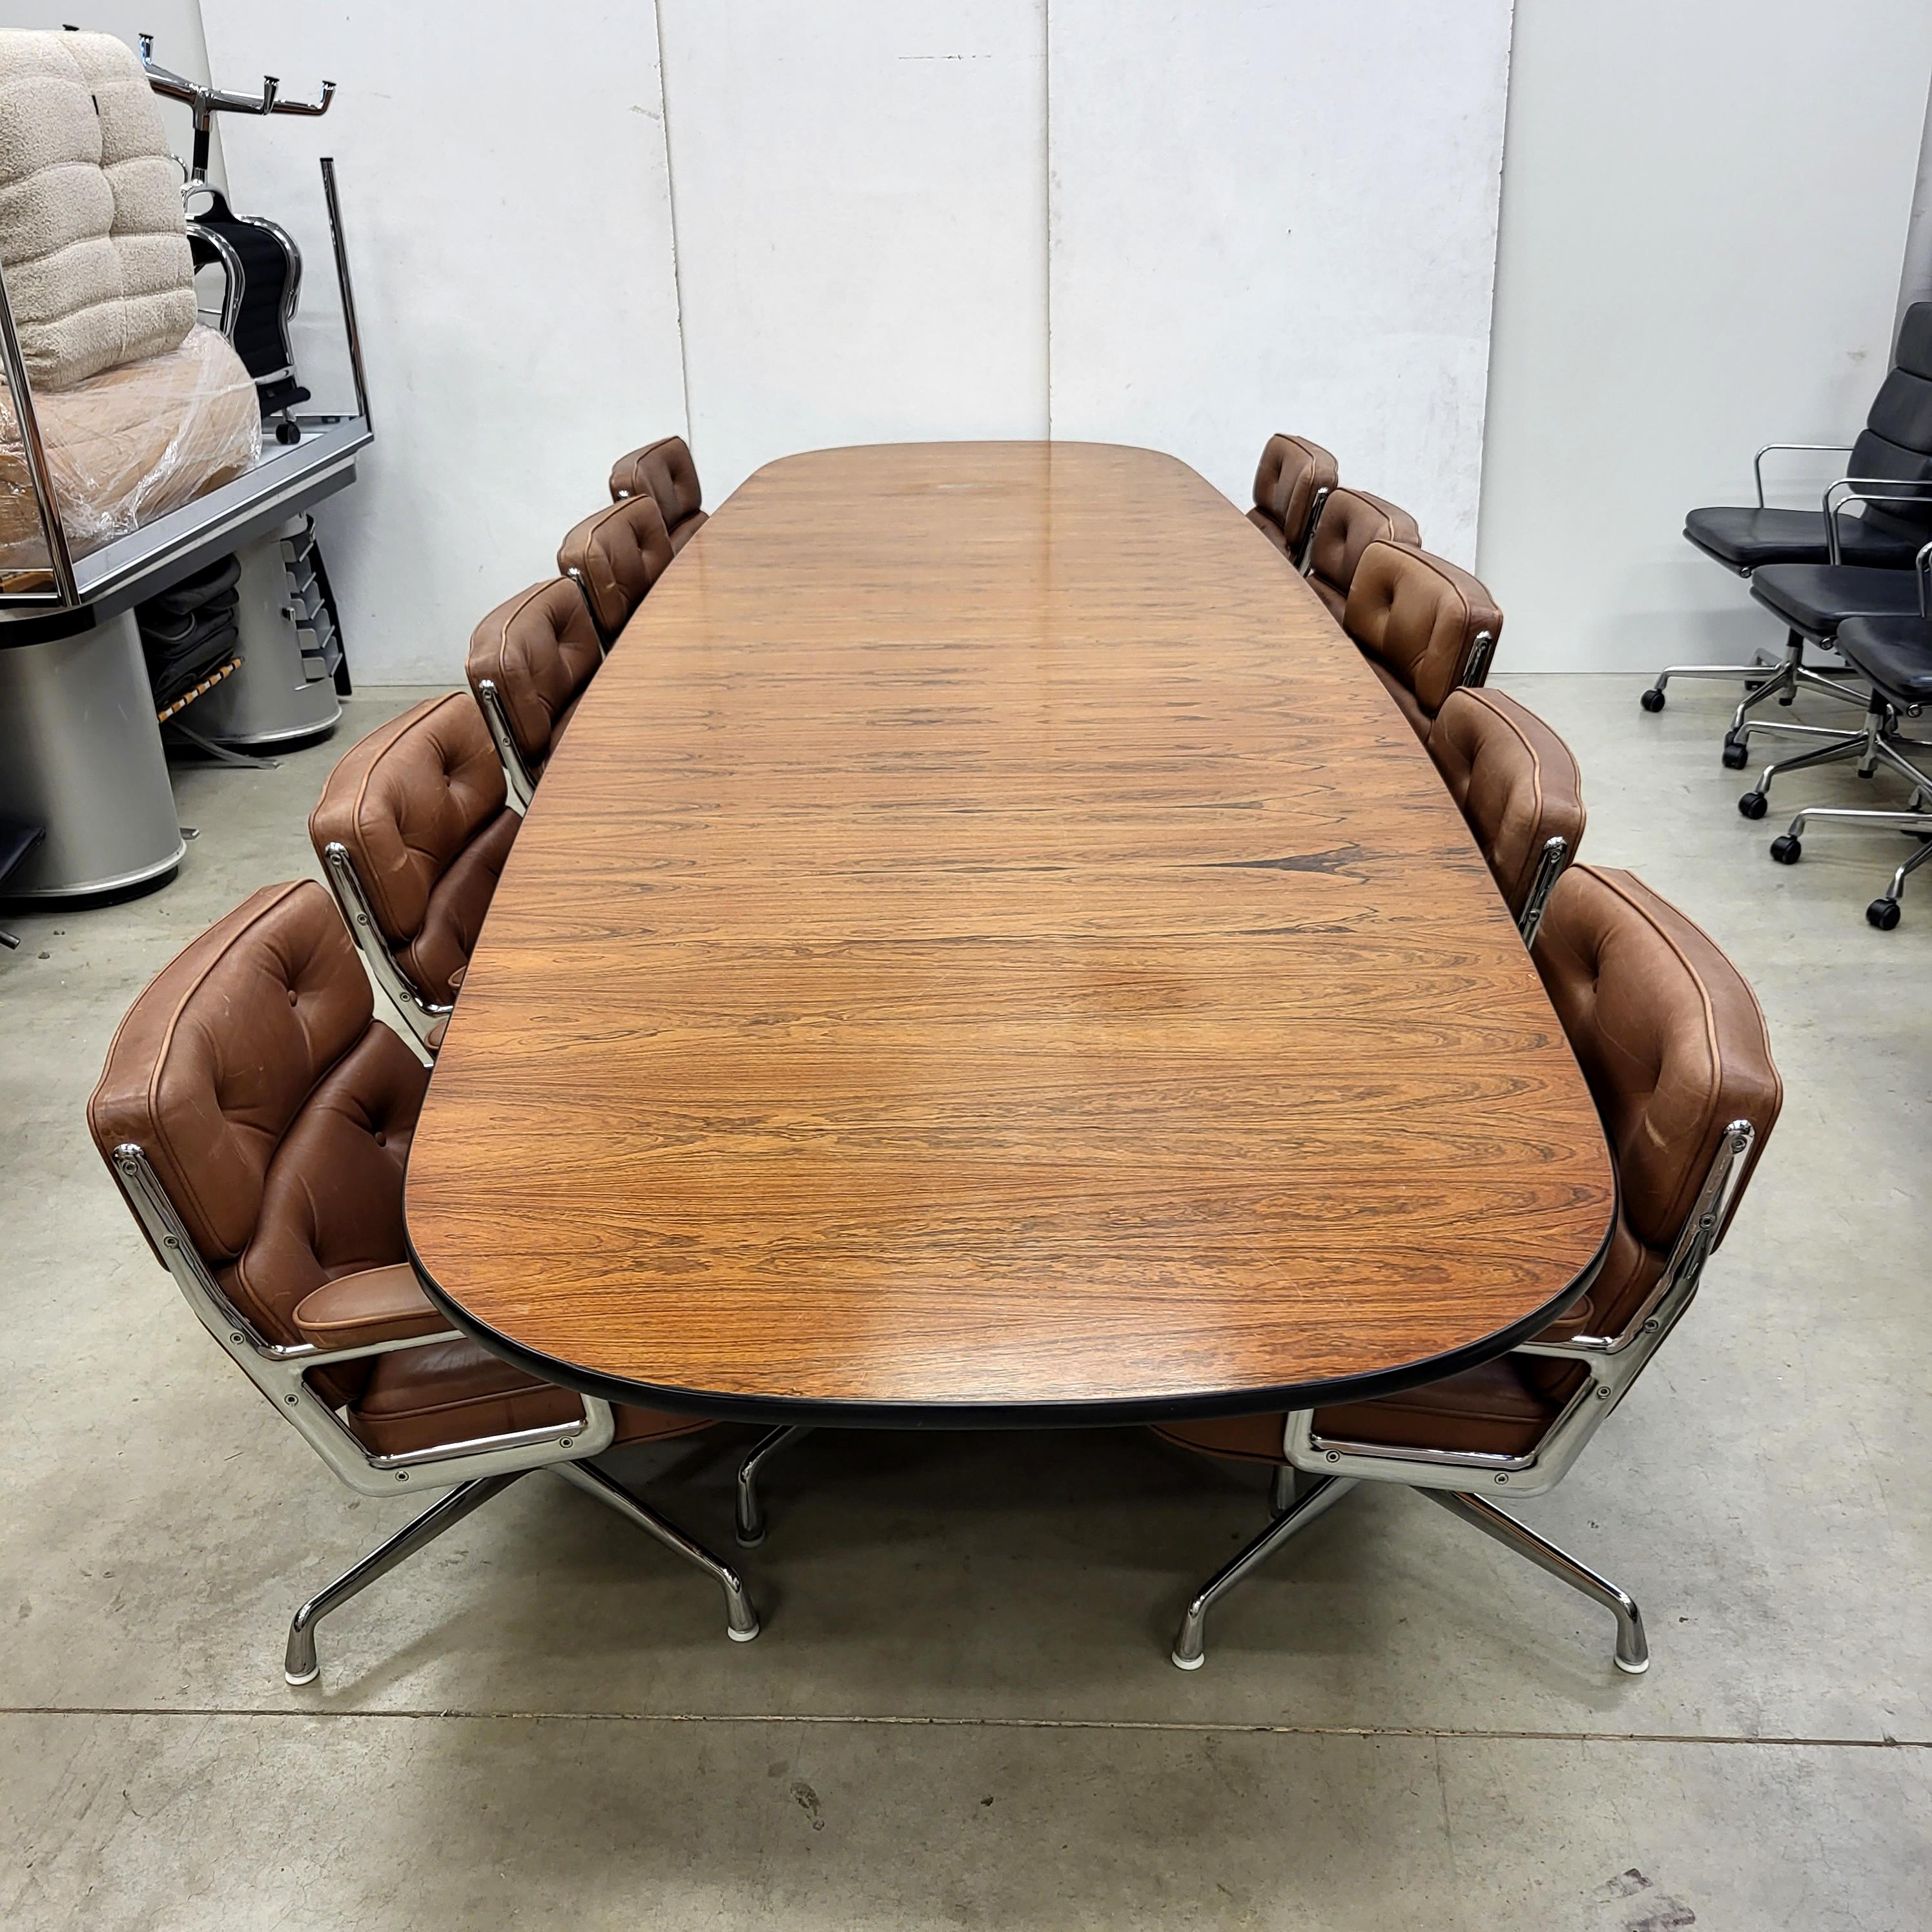 Ce terrain est une opportunité unique en son genre !

Magnifique et très rare table segmentée de 15 pieds par Charles Eames pour Herman Miller avec 10x superbes chaises de bureau Midbrown modèle ES105 produites par Vitra. Les chaises sont dotées